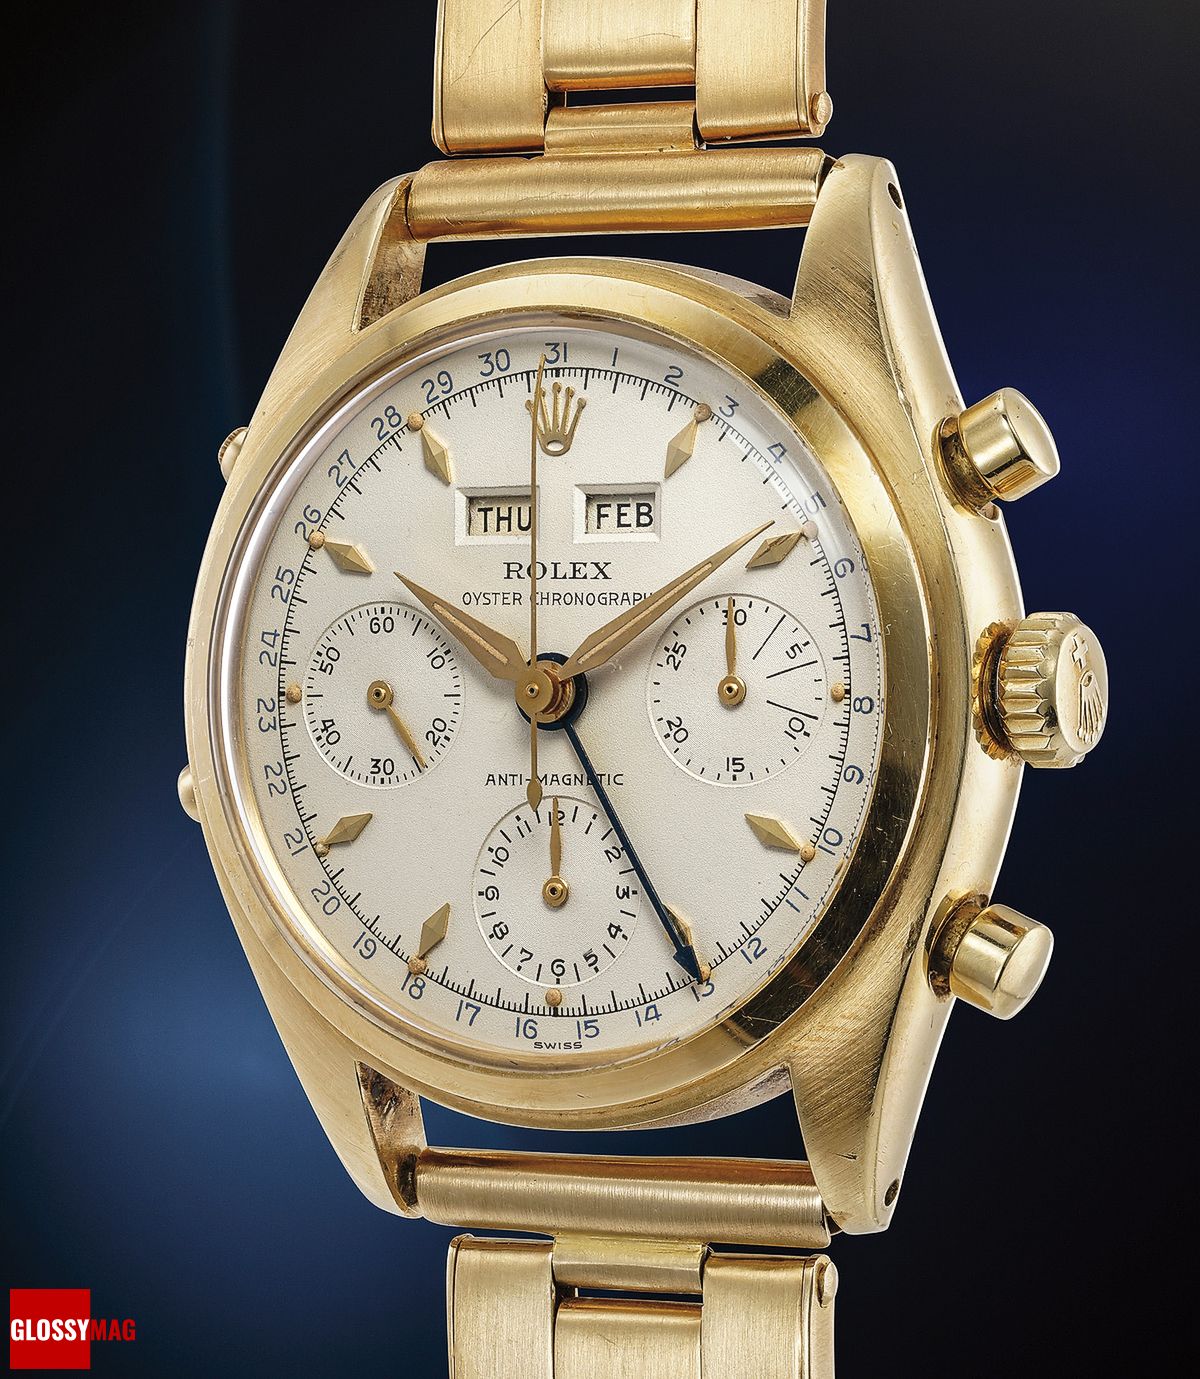 Часы Rolex Ref. 6036 Oyster Chronographe, известные как «Datocompax» или «Killy», в корпусе из желтого золота, хронограф с тройным календарем